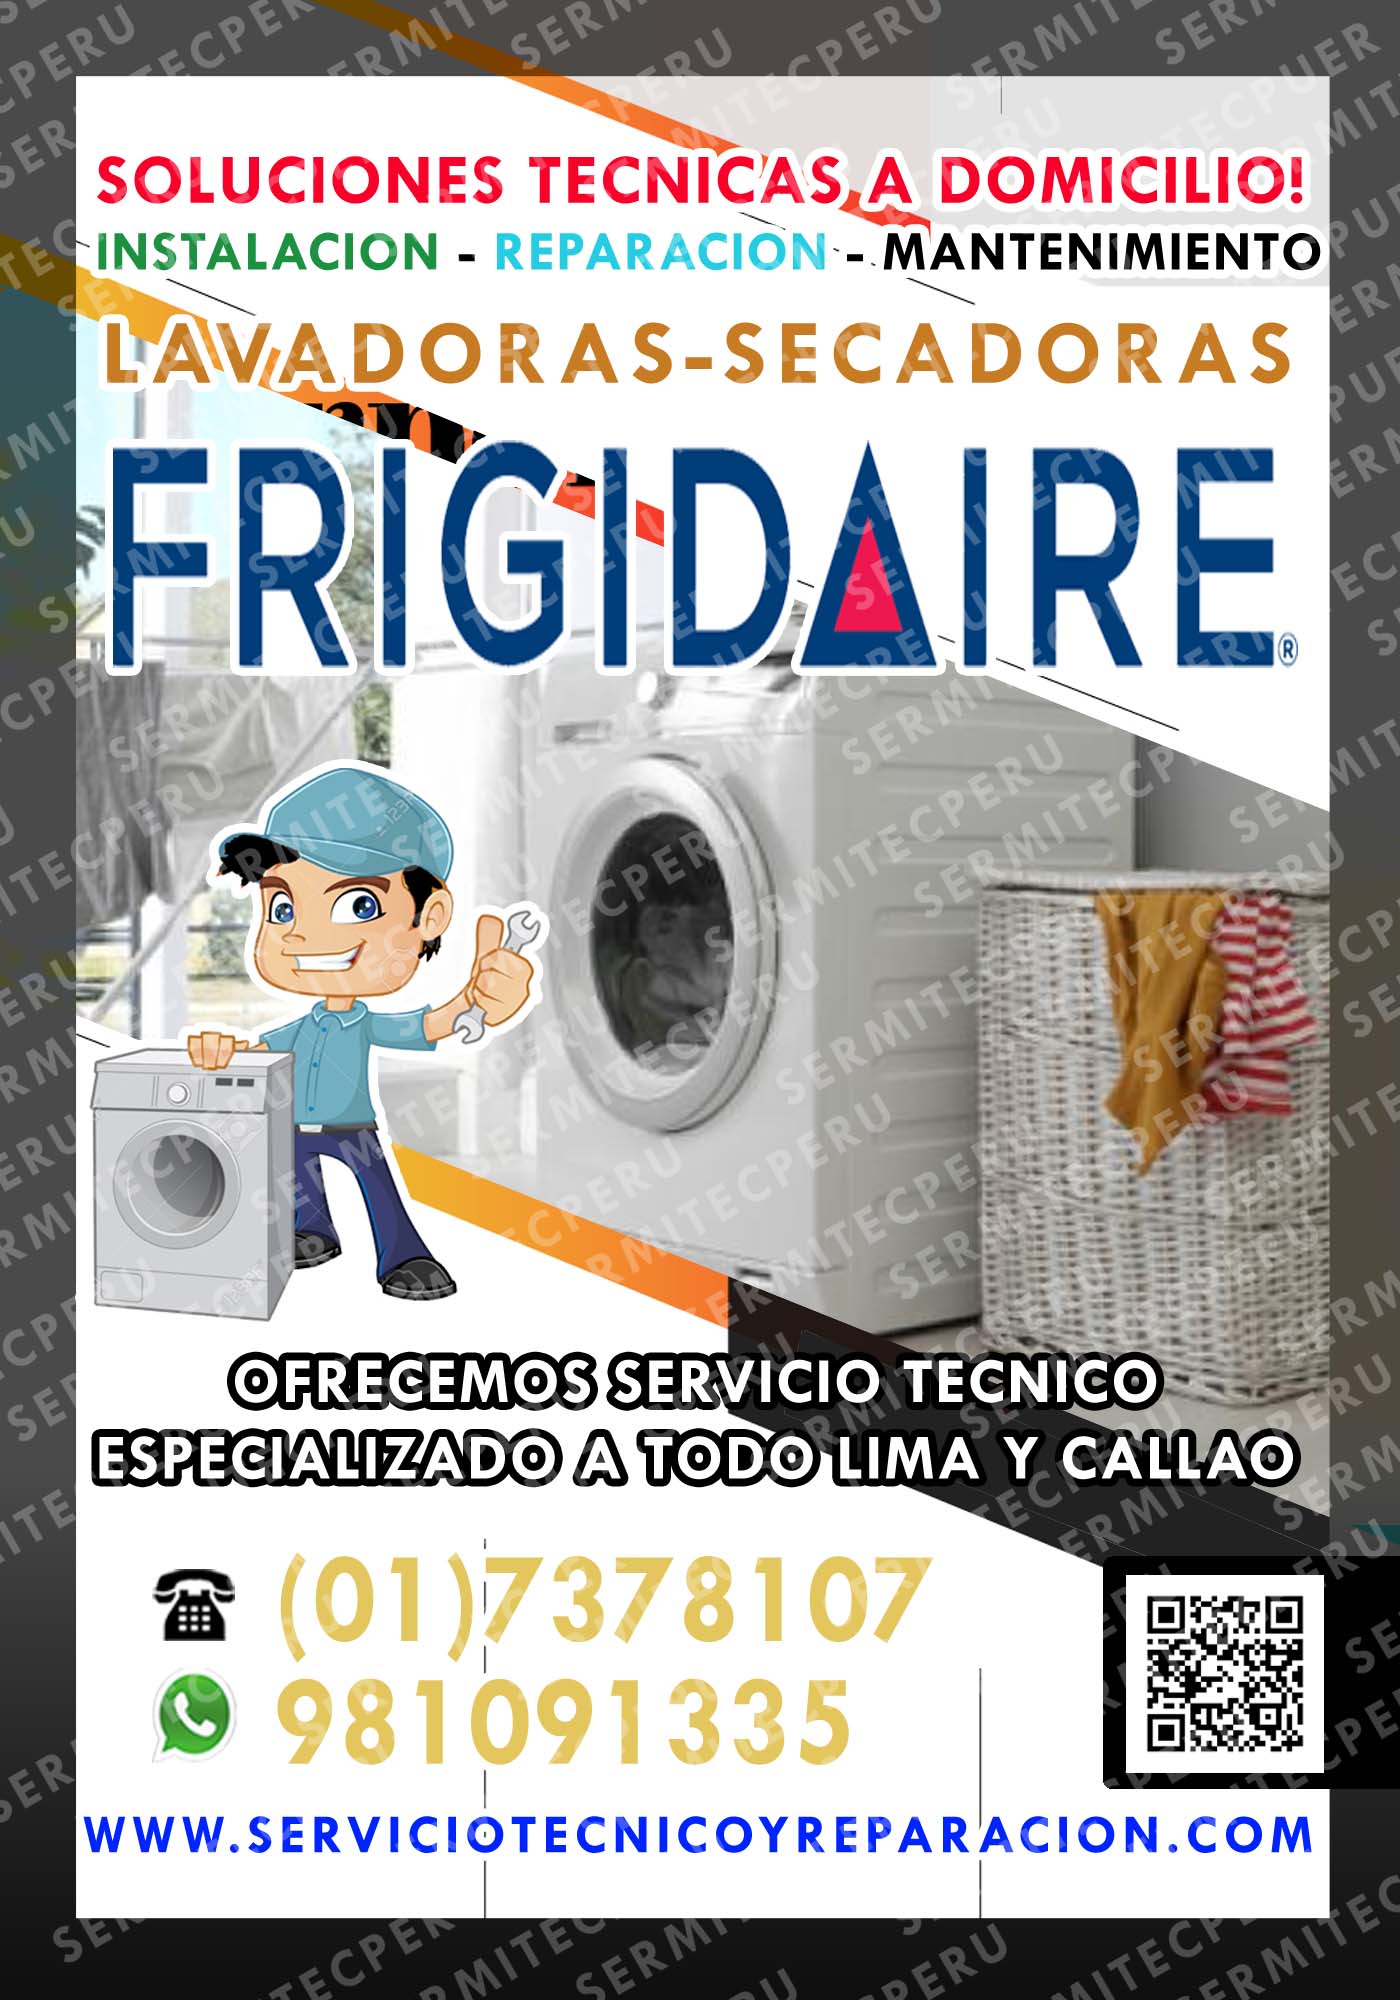 A Domicilio! Soporte Técnico de lavadoras FRIGIDAIRE-7378107 en los OLIVOS